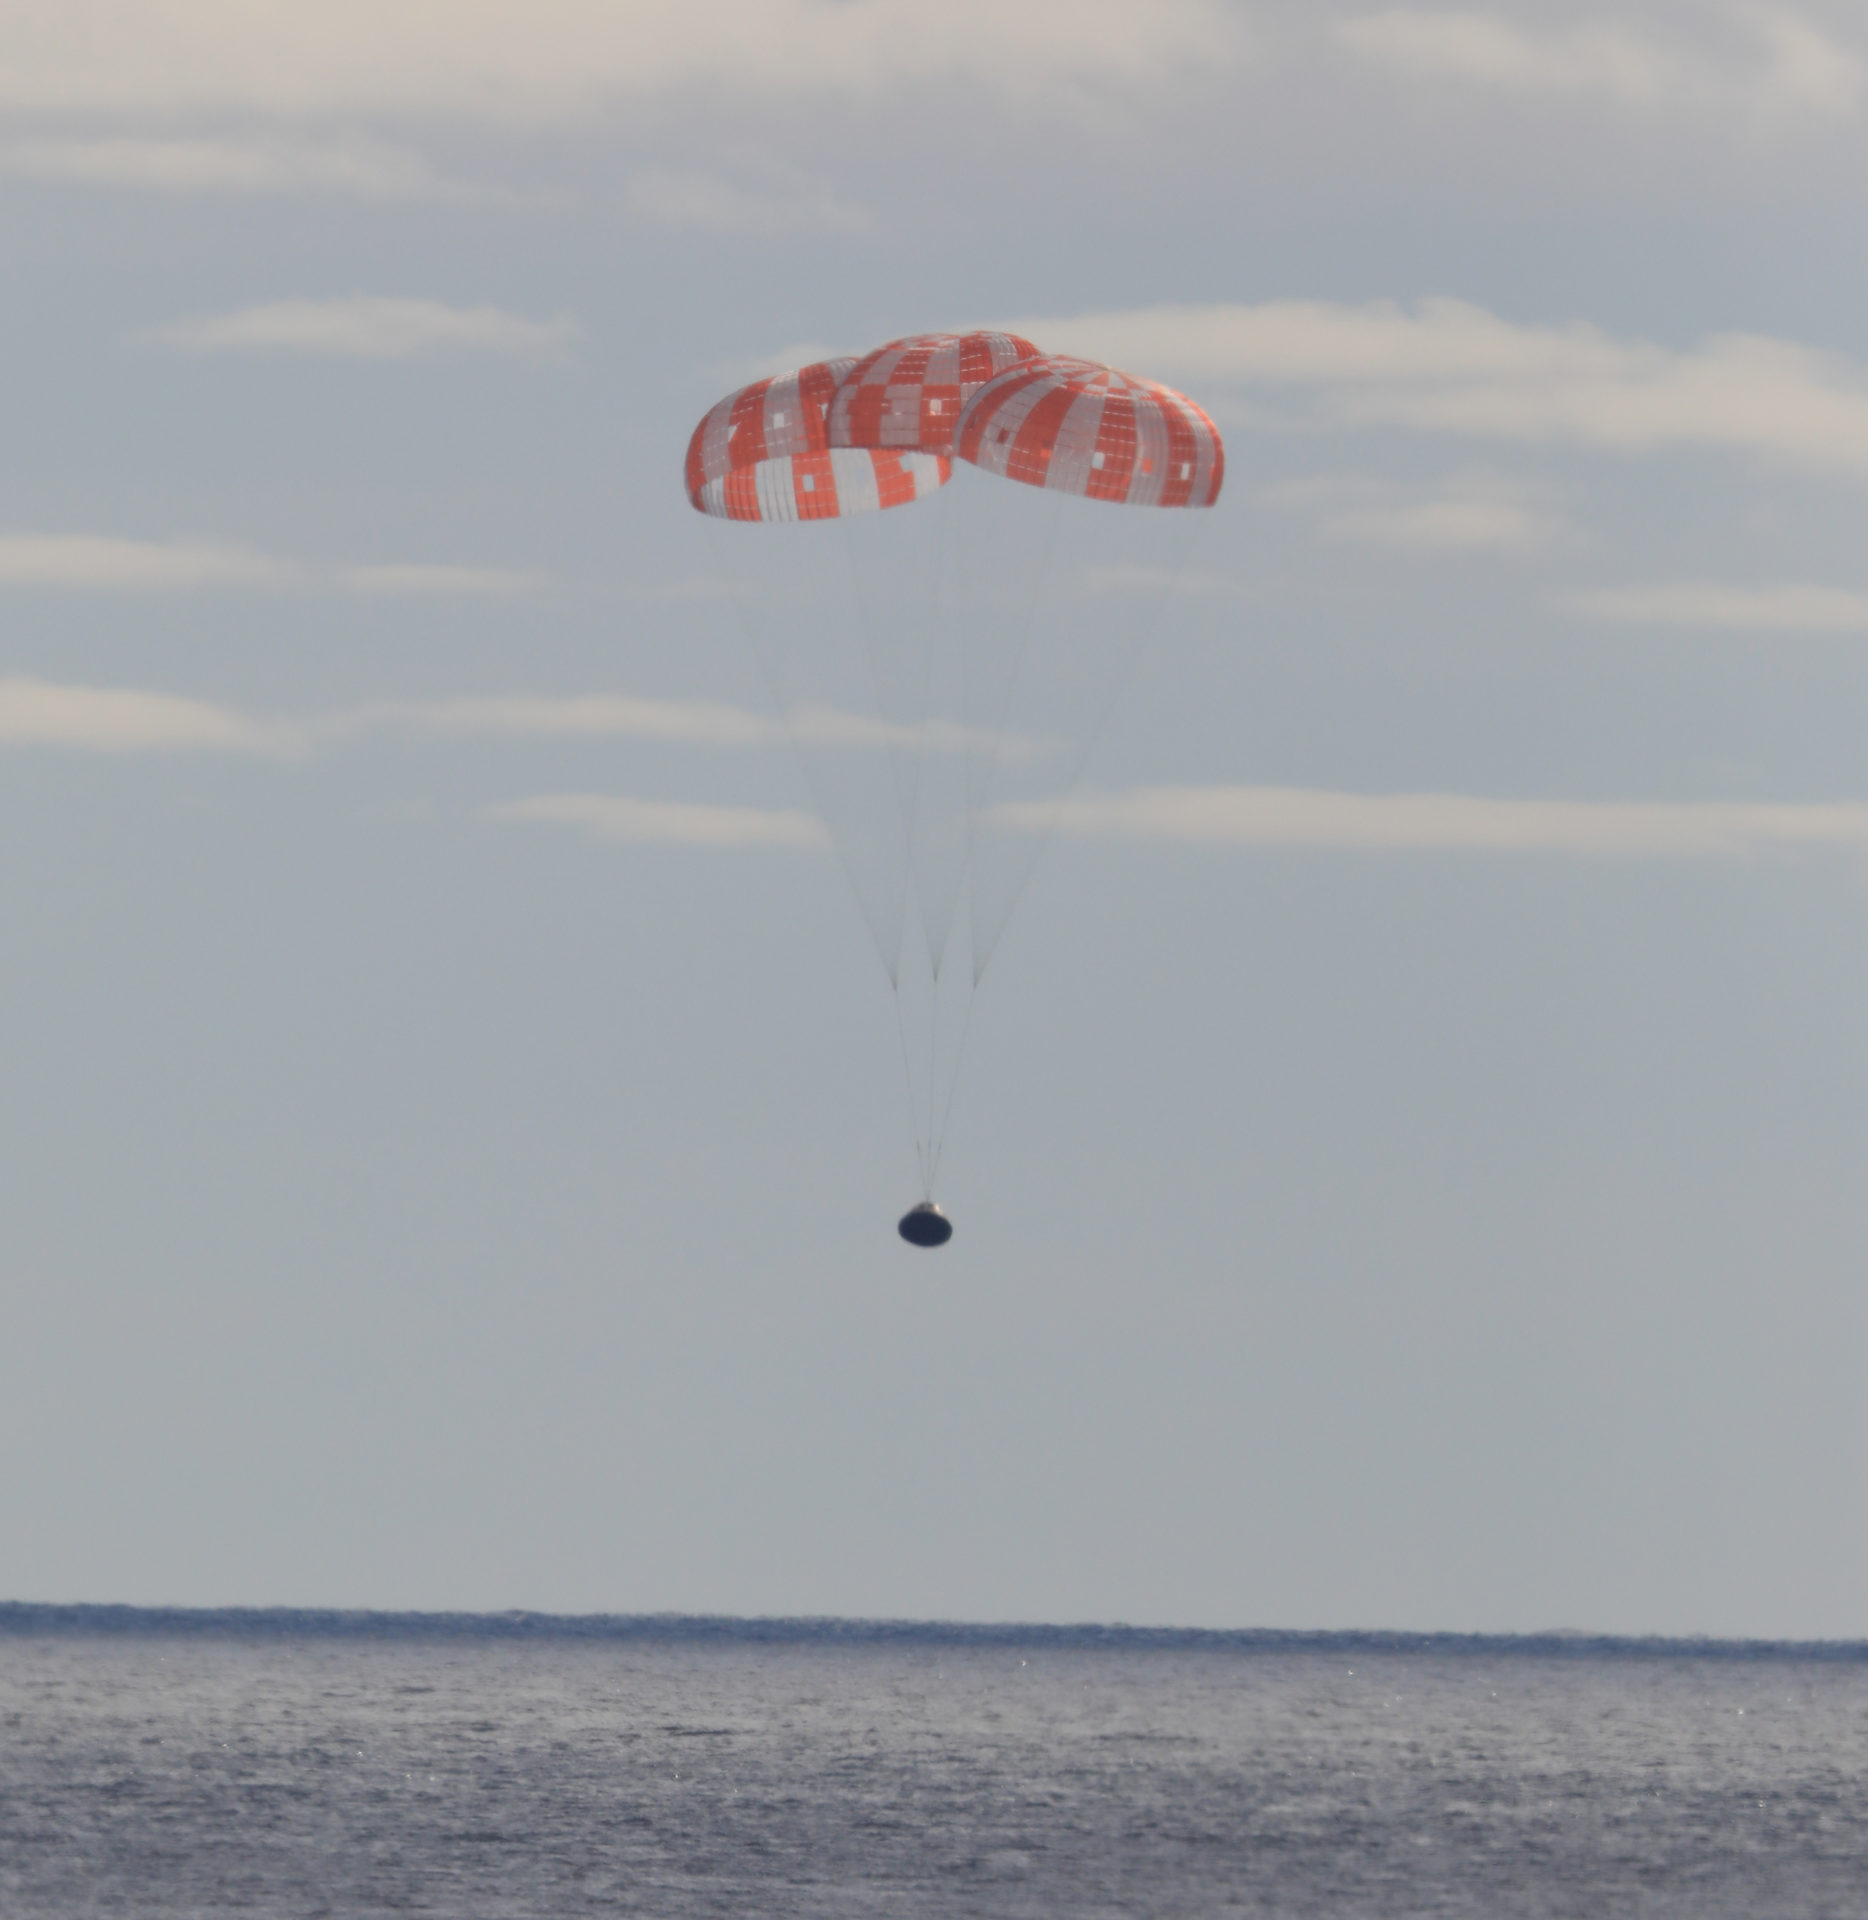 La capsule Orion descend vers l'océan Pacifique sous ses 3 parachutes